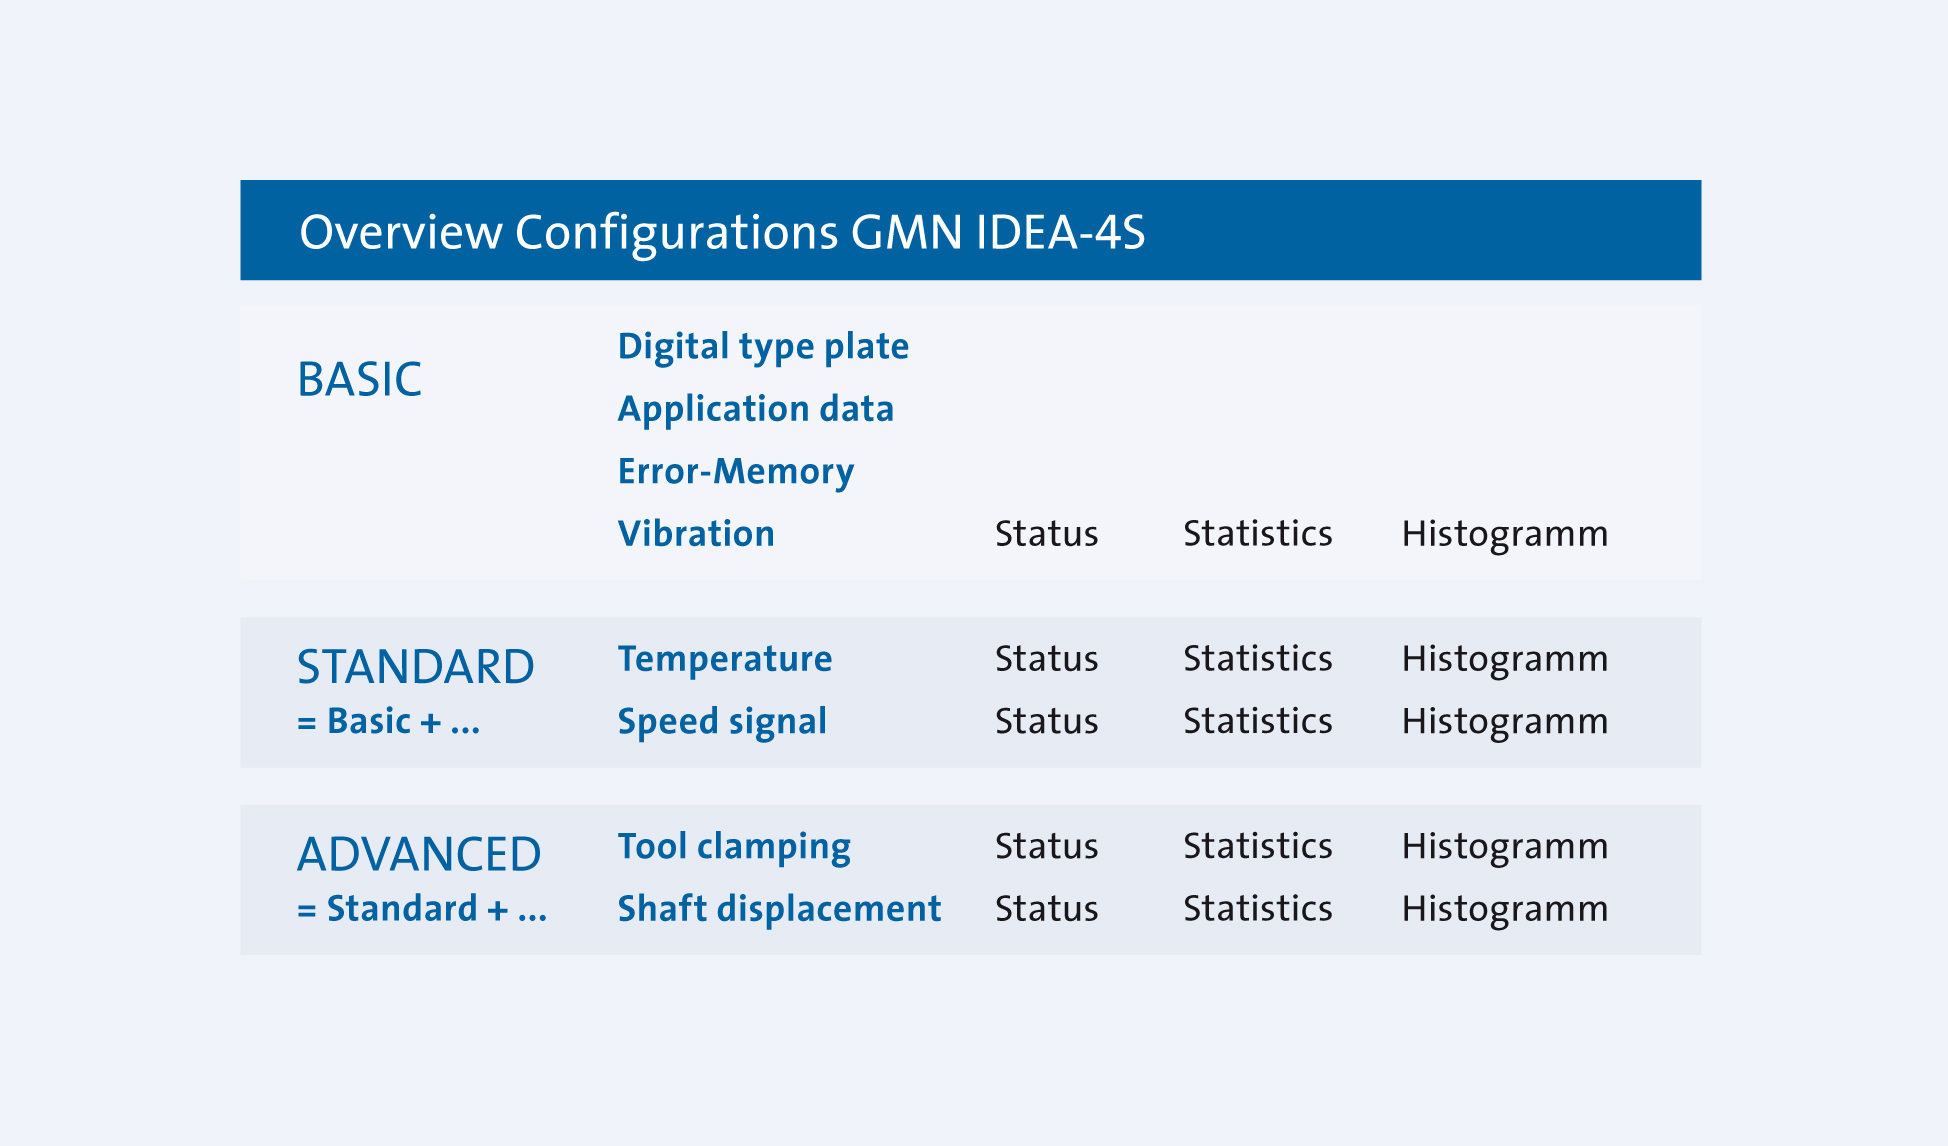 GMN IDEA-4S Configuration